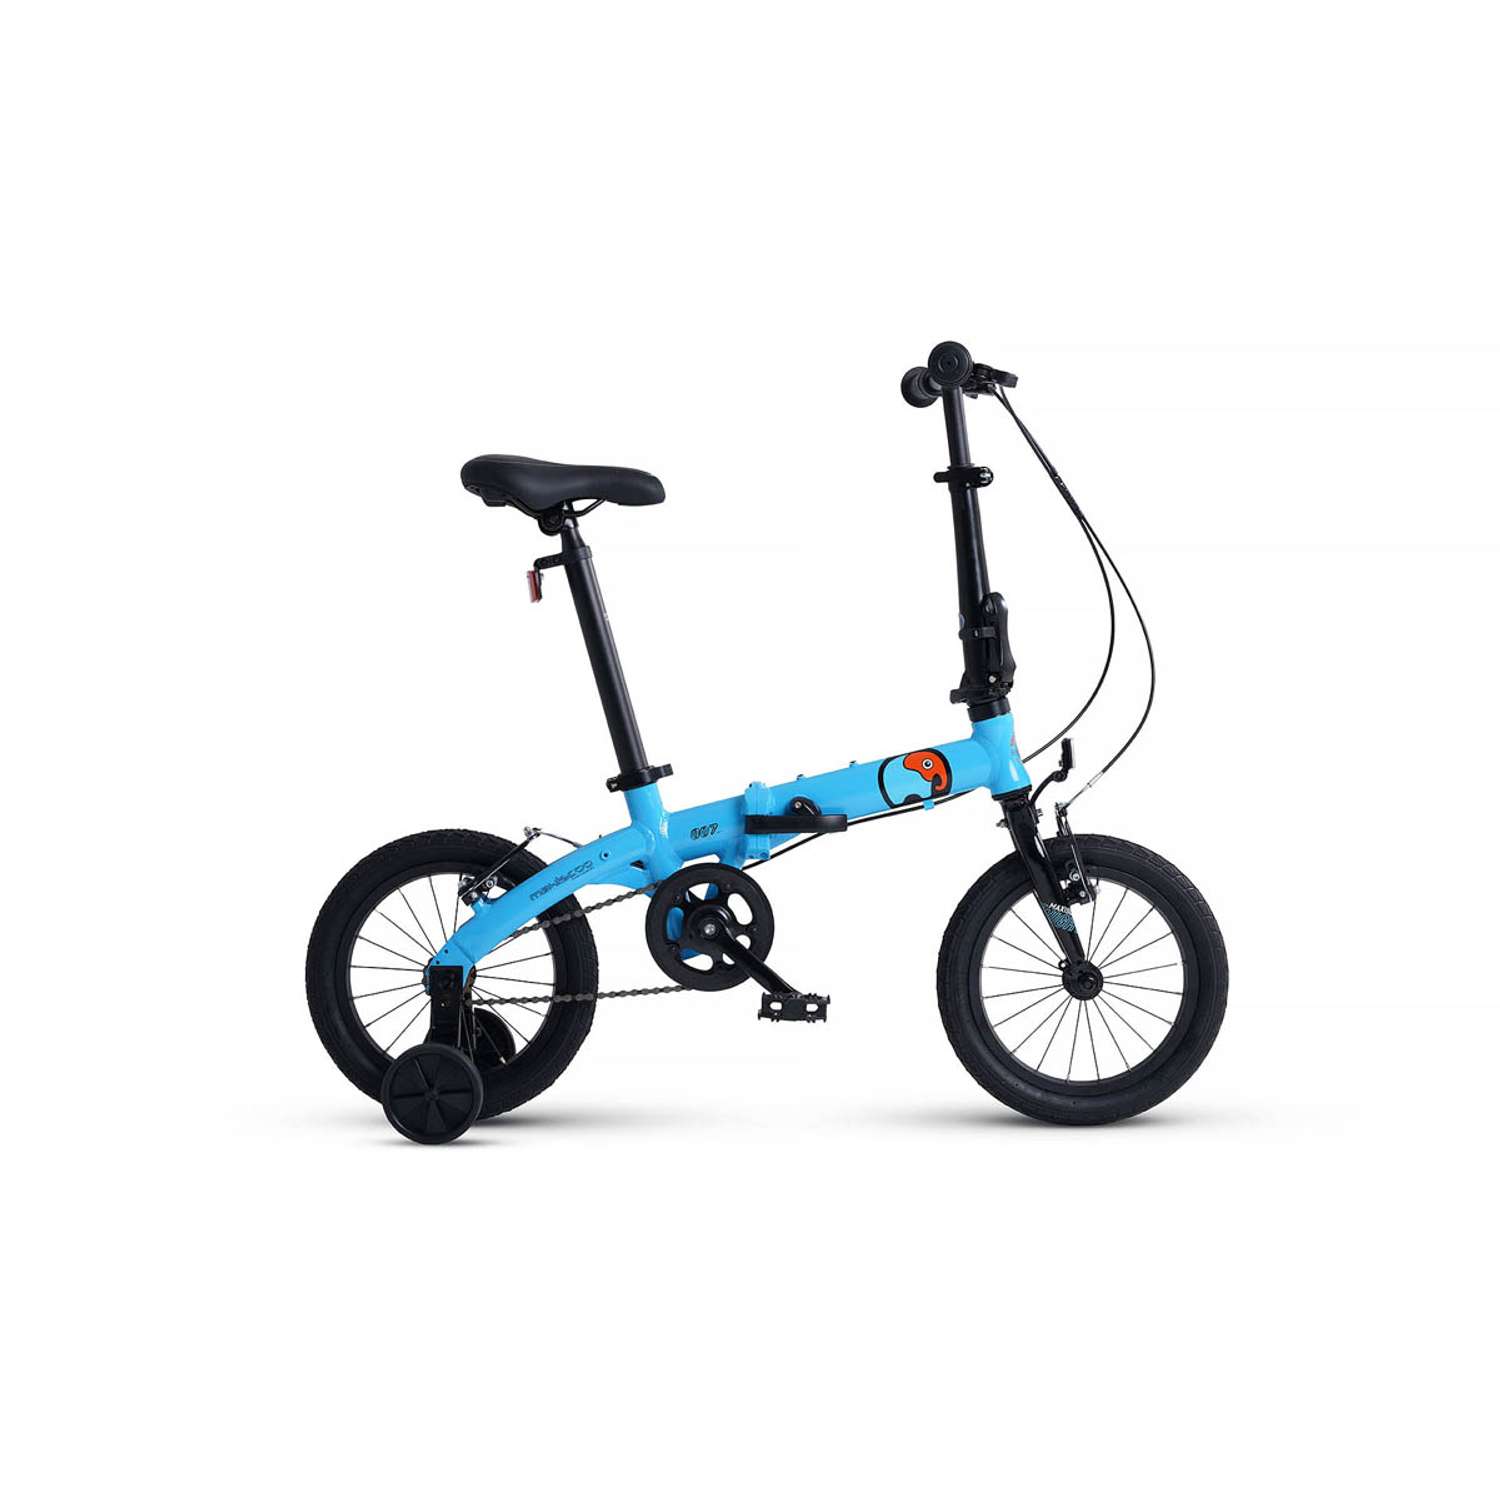 Велосипед Детский Складной Maxiscoo S007 стандарт 14 синий - фото 1